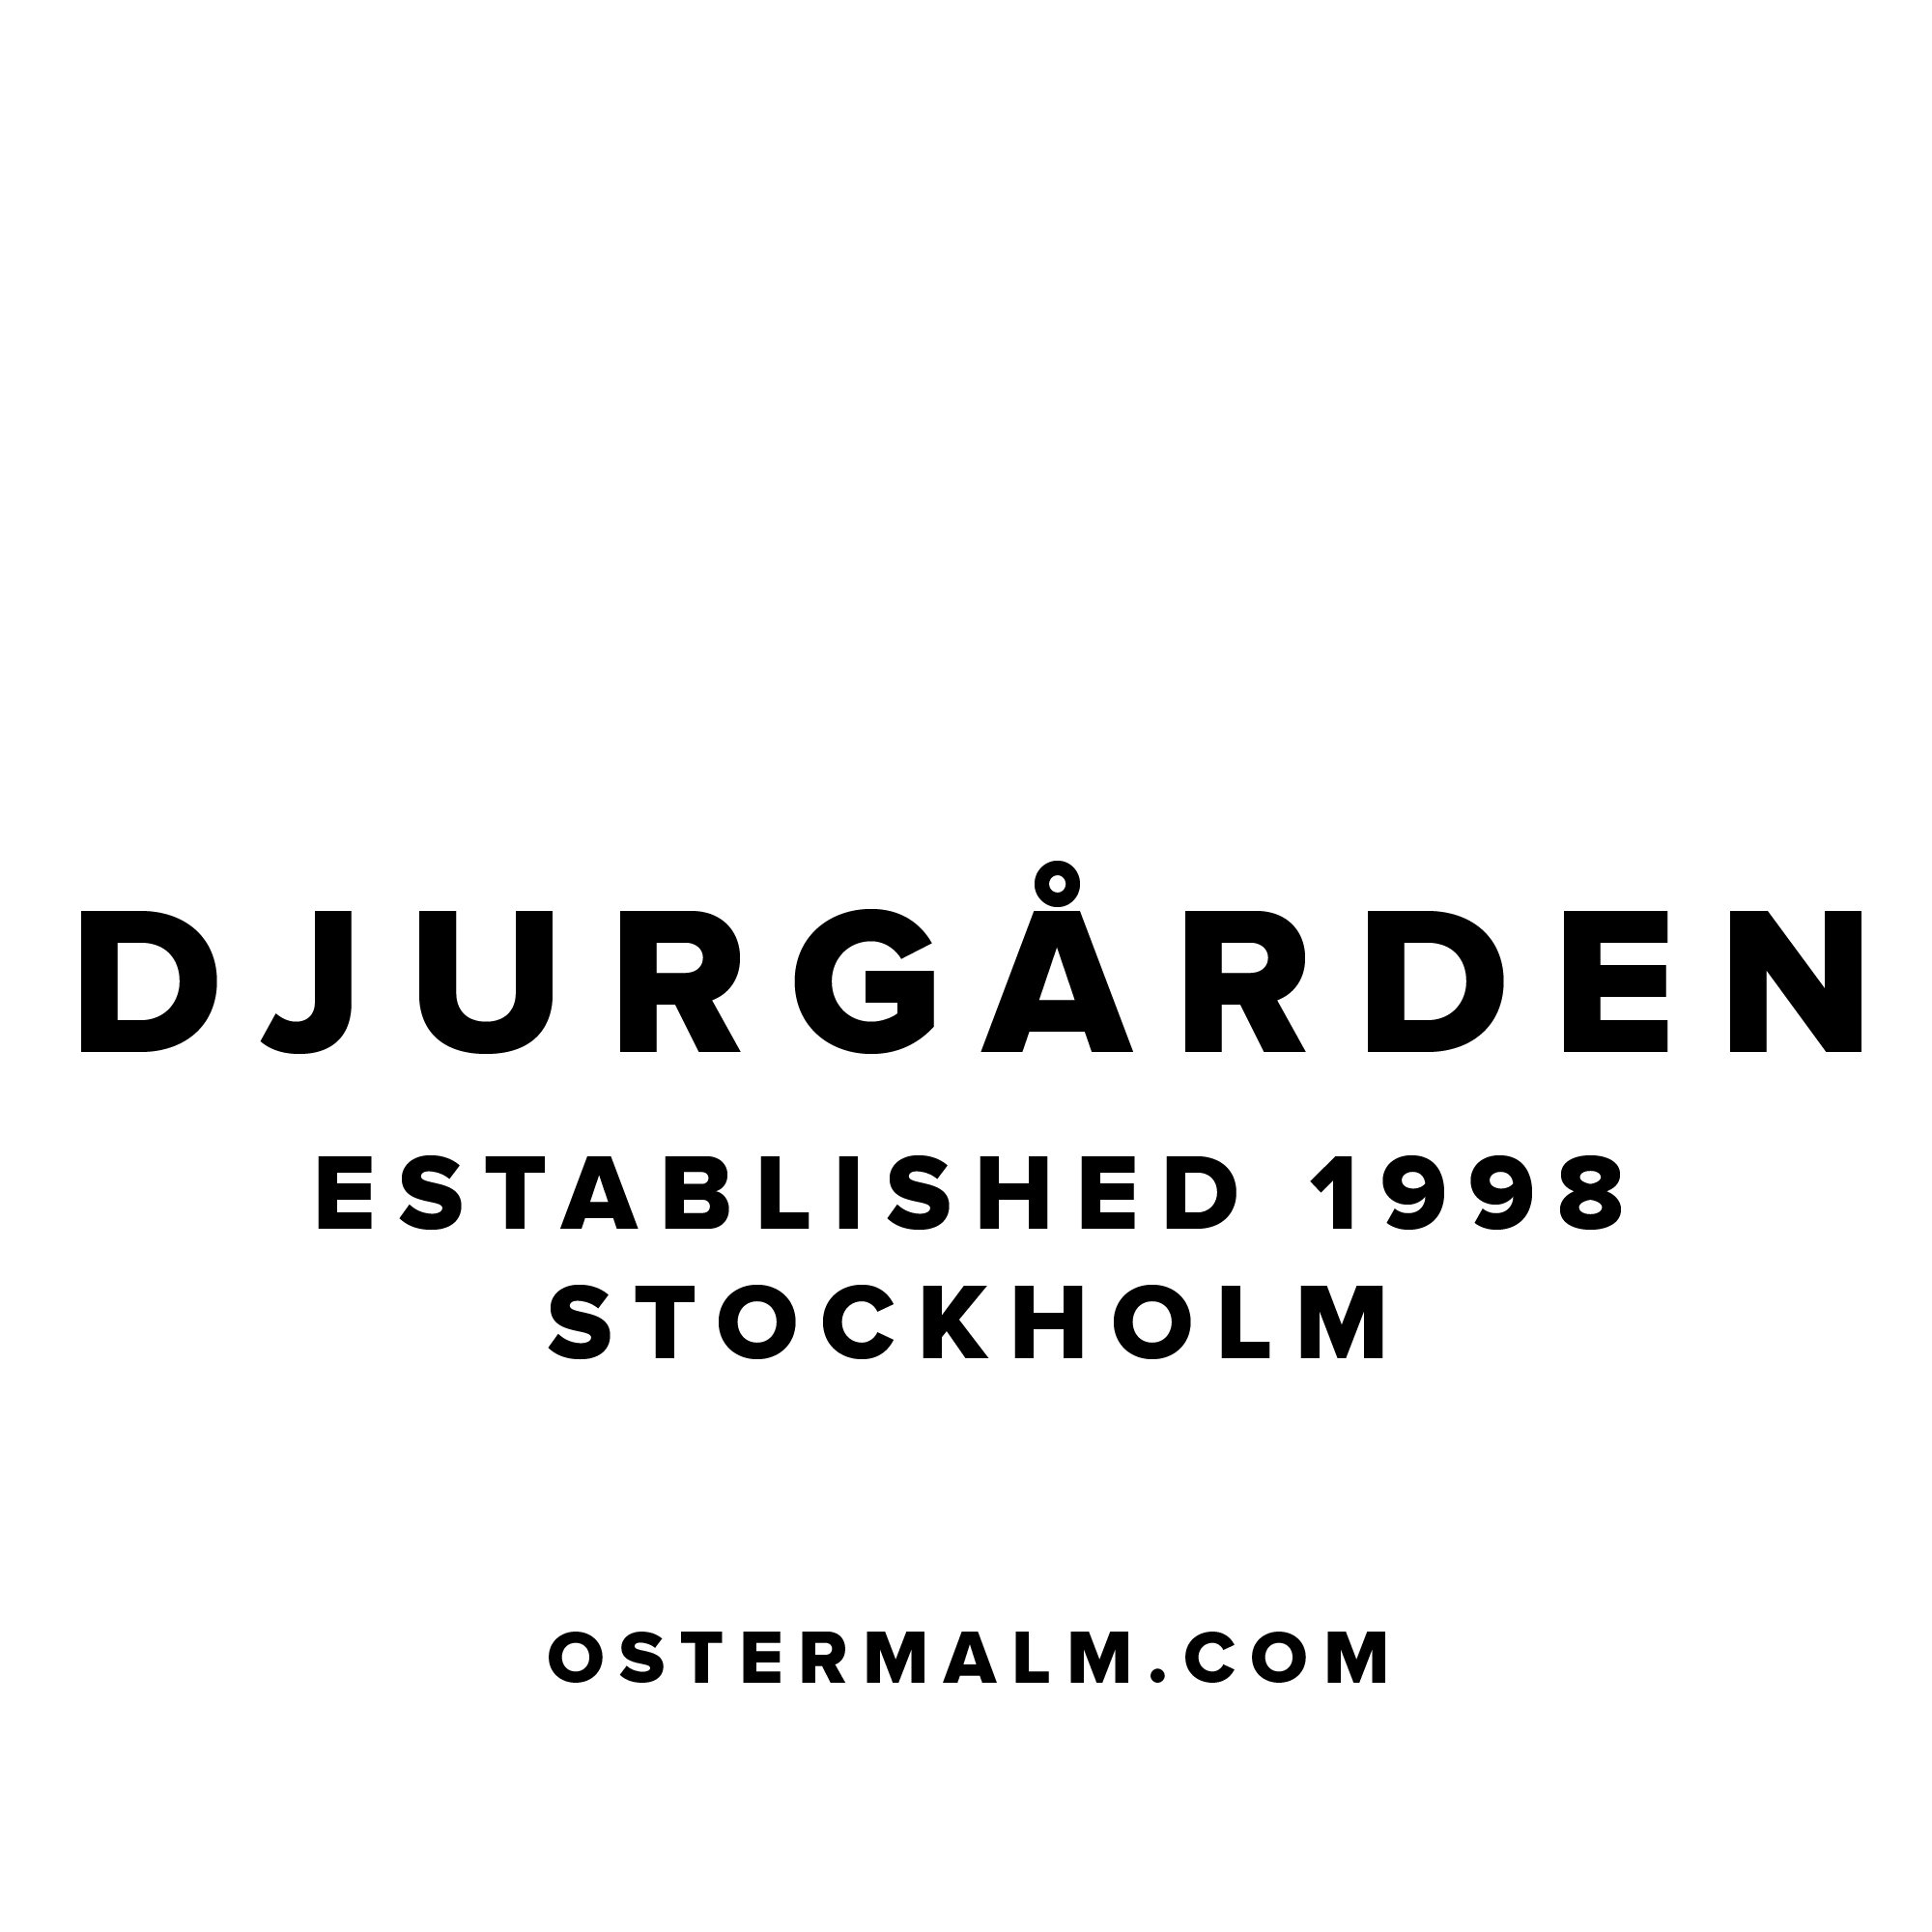 I am Djurgården – Made with ♥ in Stockholm. Djurgården part of Östermalm. #djurgården #djurgarden